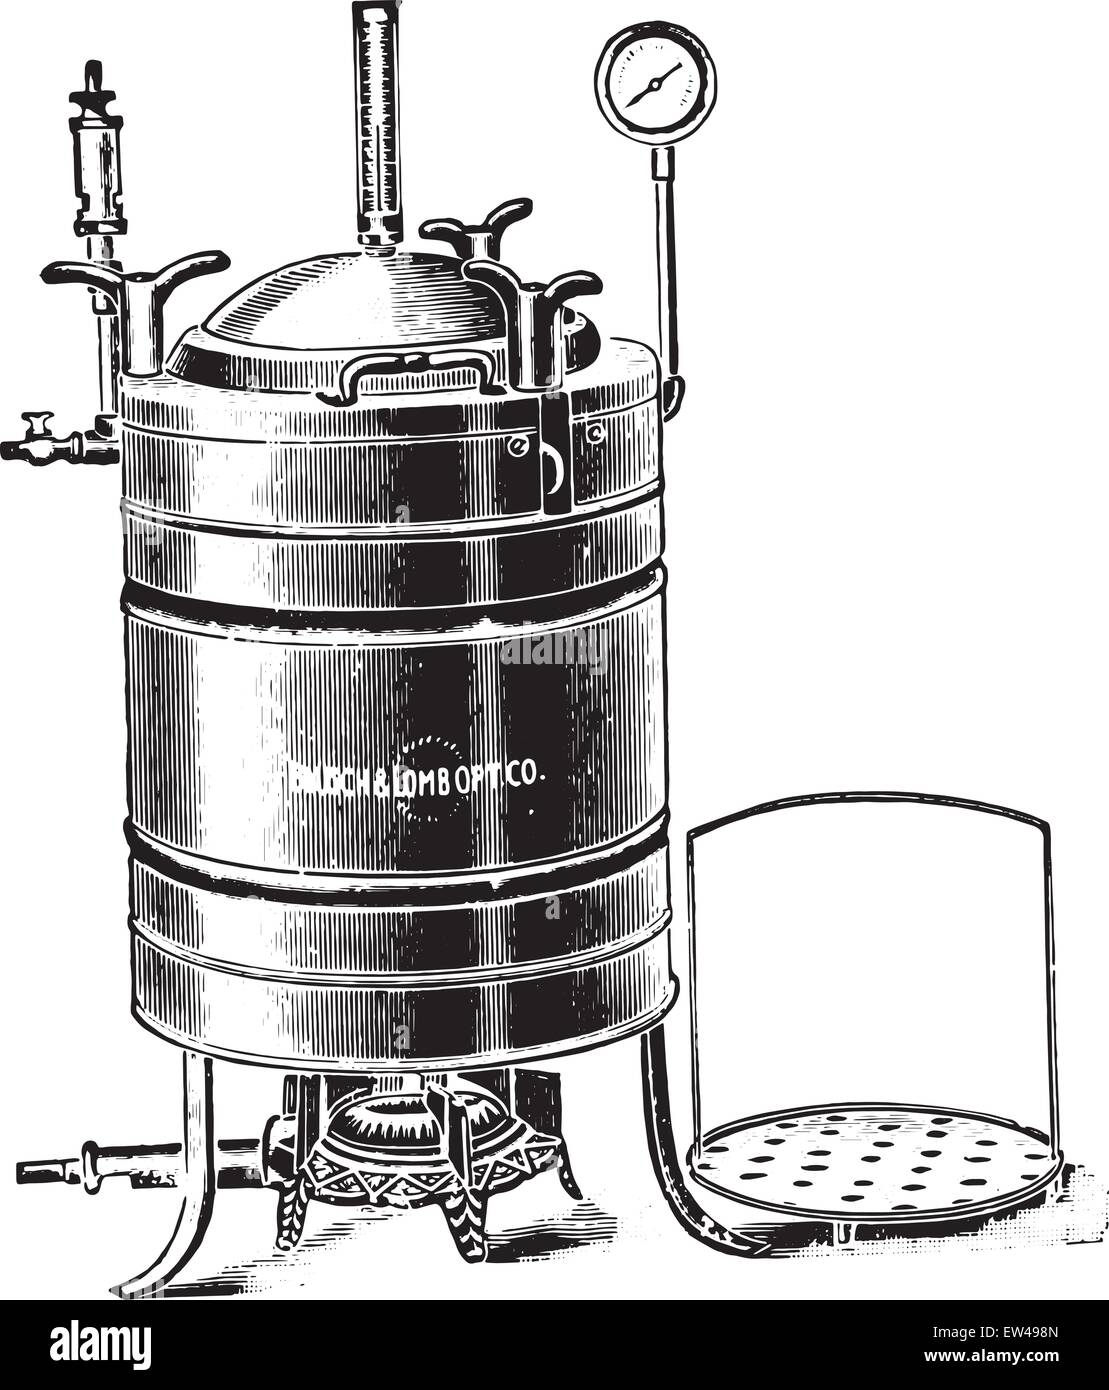 Converger desagüe Giro de vuelta Autoclave o digestor utiliza para la esterilización por vapor bajo presión,  vintage ilustración grabada Imagen Vector de stock - Alamy